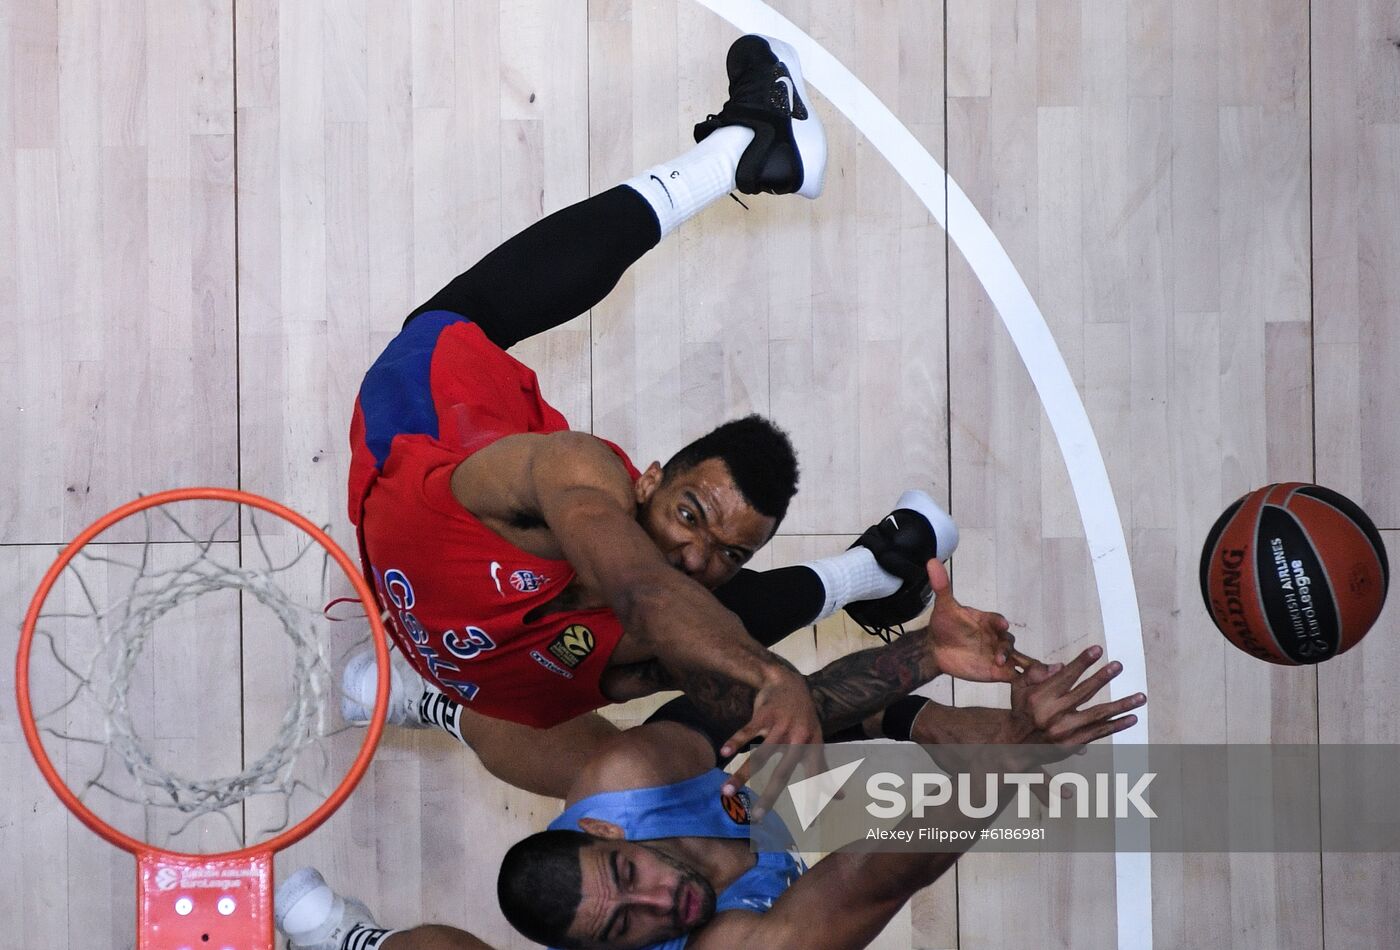 Russia Basketball Euroleague CSKA - Zenit